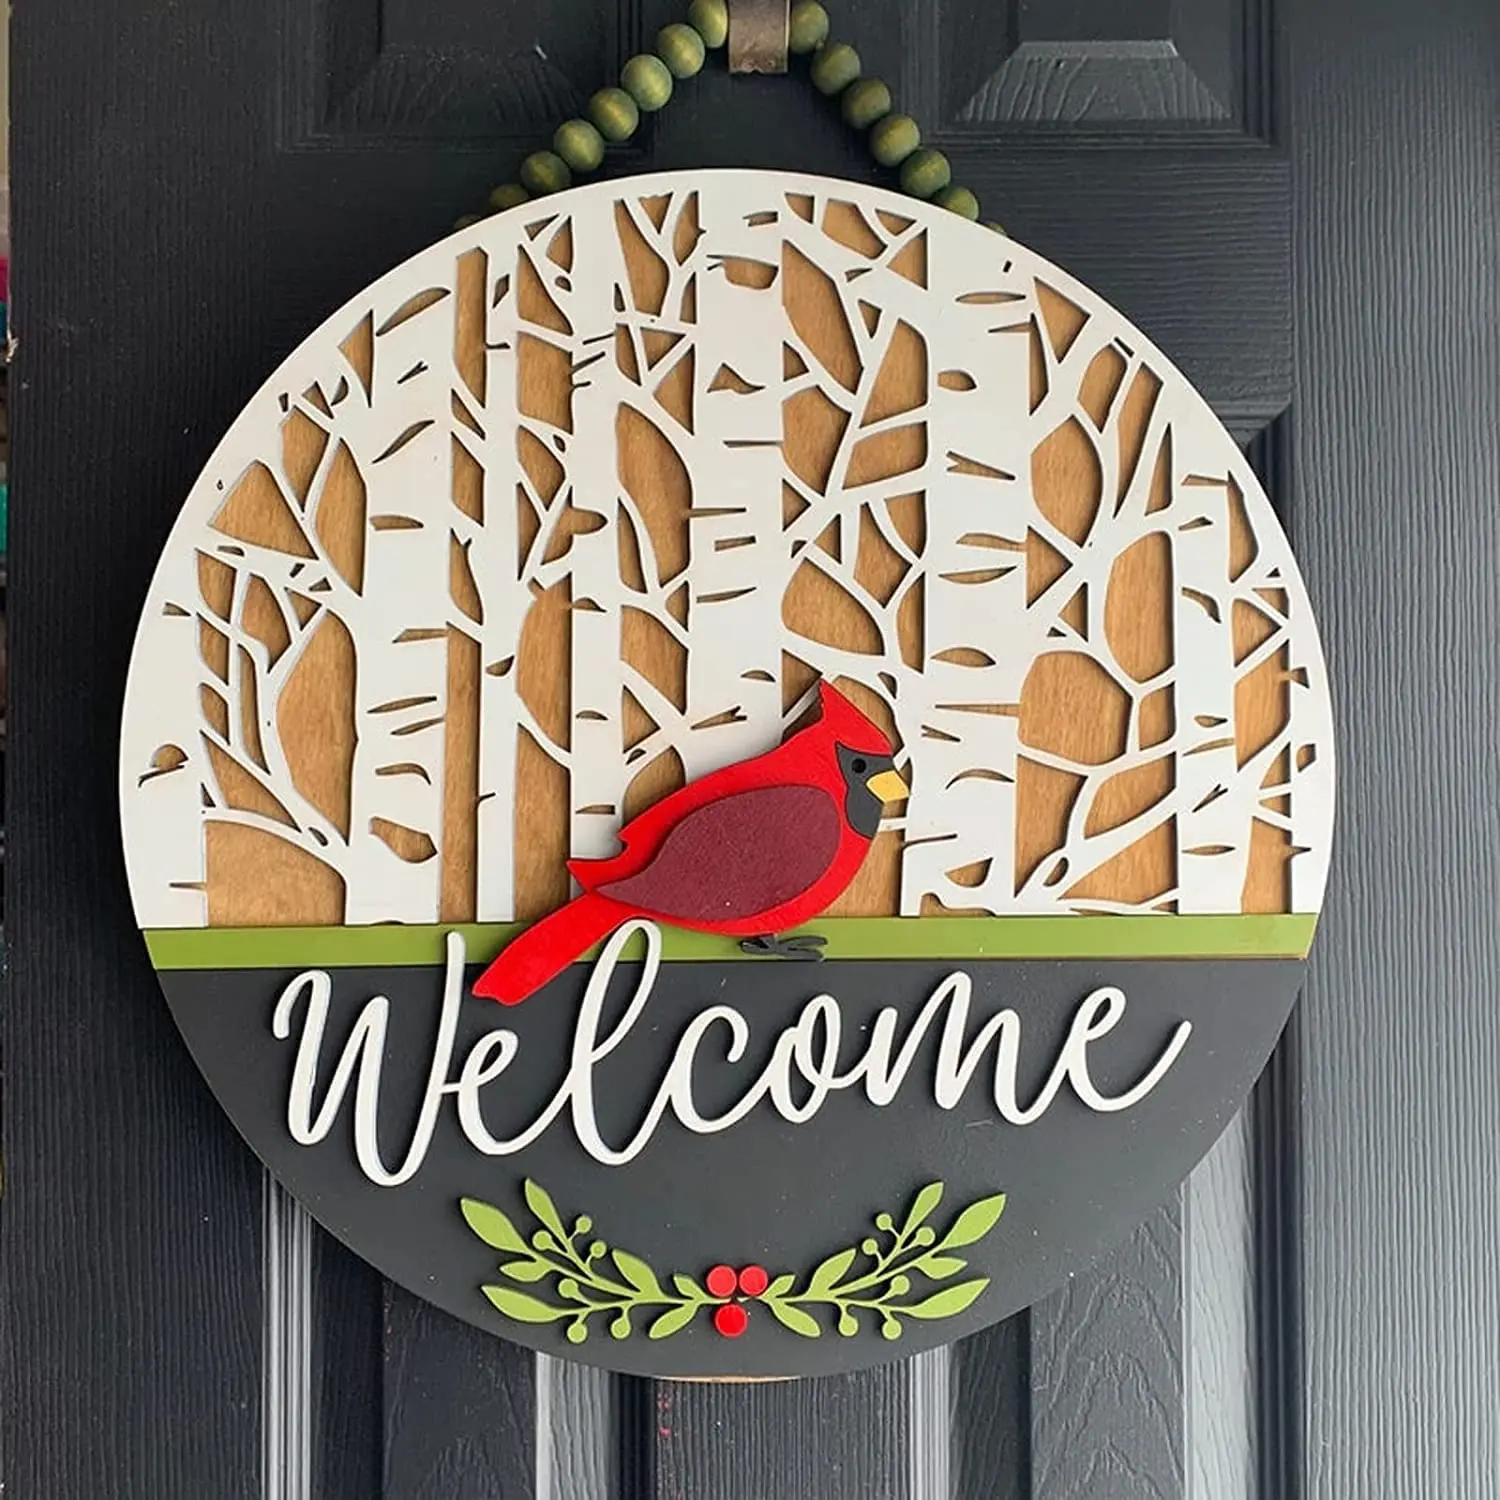 

Winter Cardinal Door Hanger 3D Wooden Xmas Decorations Front Door Welcome Wreath Hanging Sign for Indoor Outdoor Front Porch